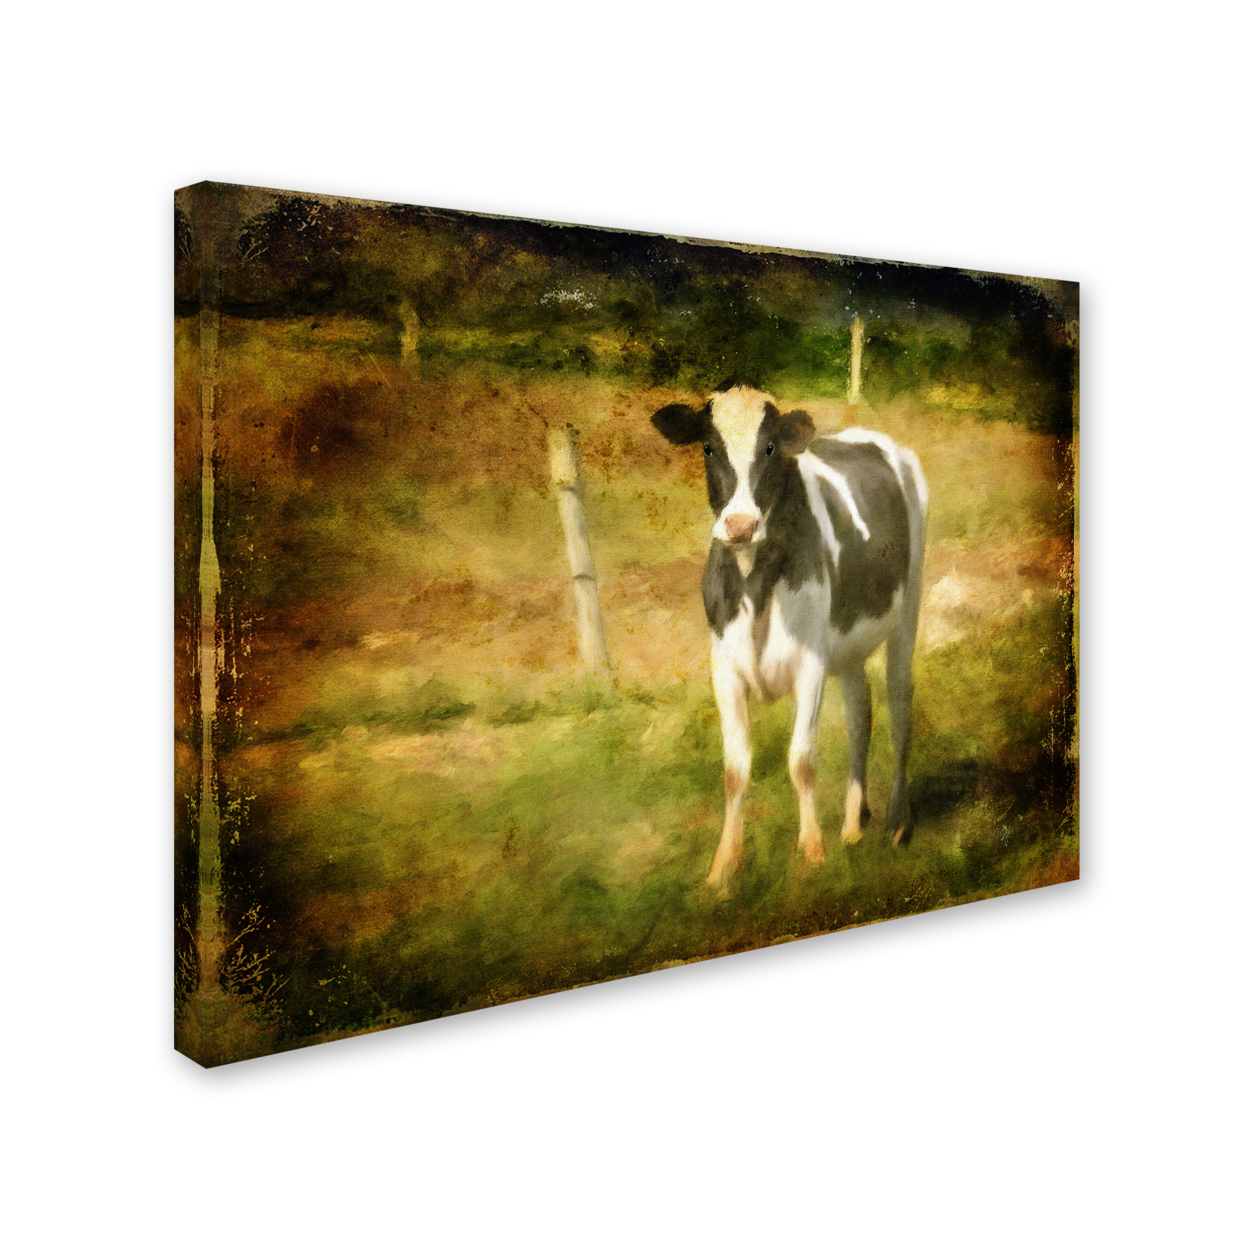 Lois Bryan 'Handsome Holstein' 14 X 19 Canvas Art